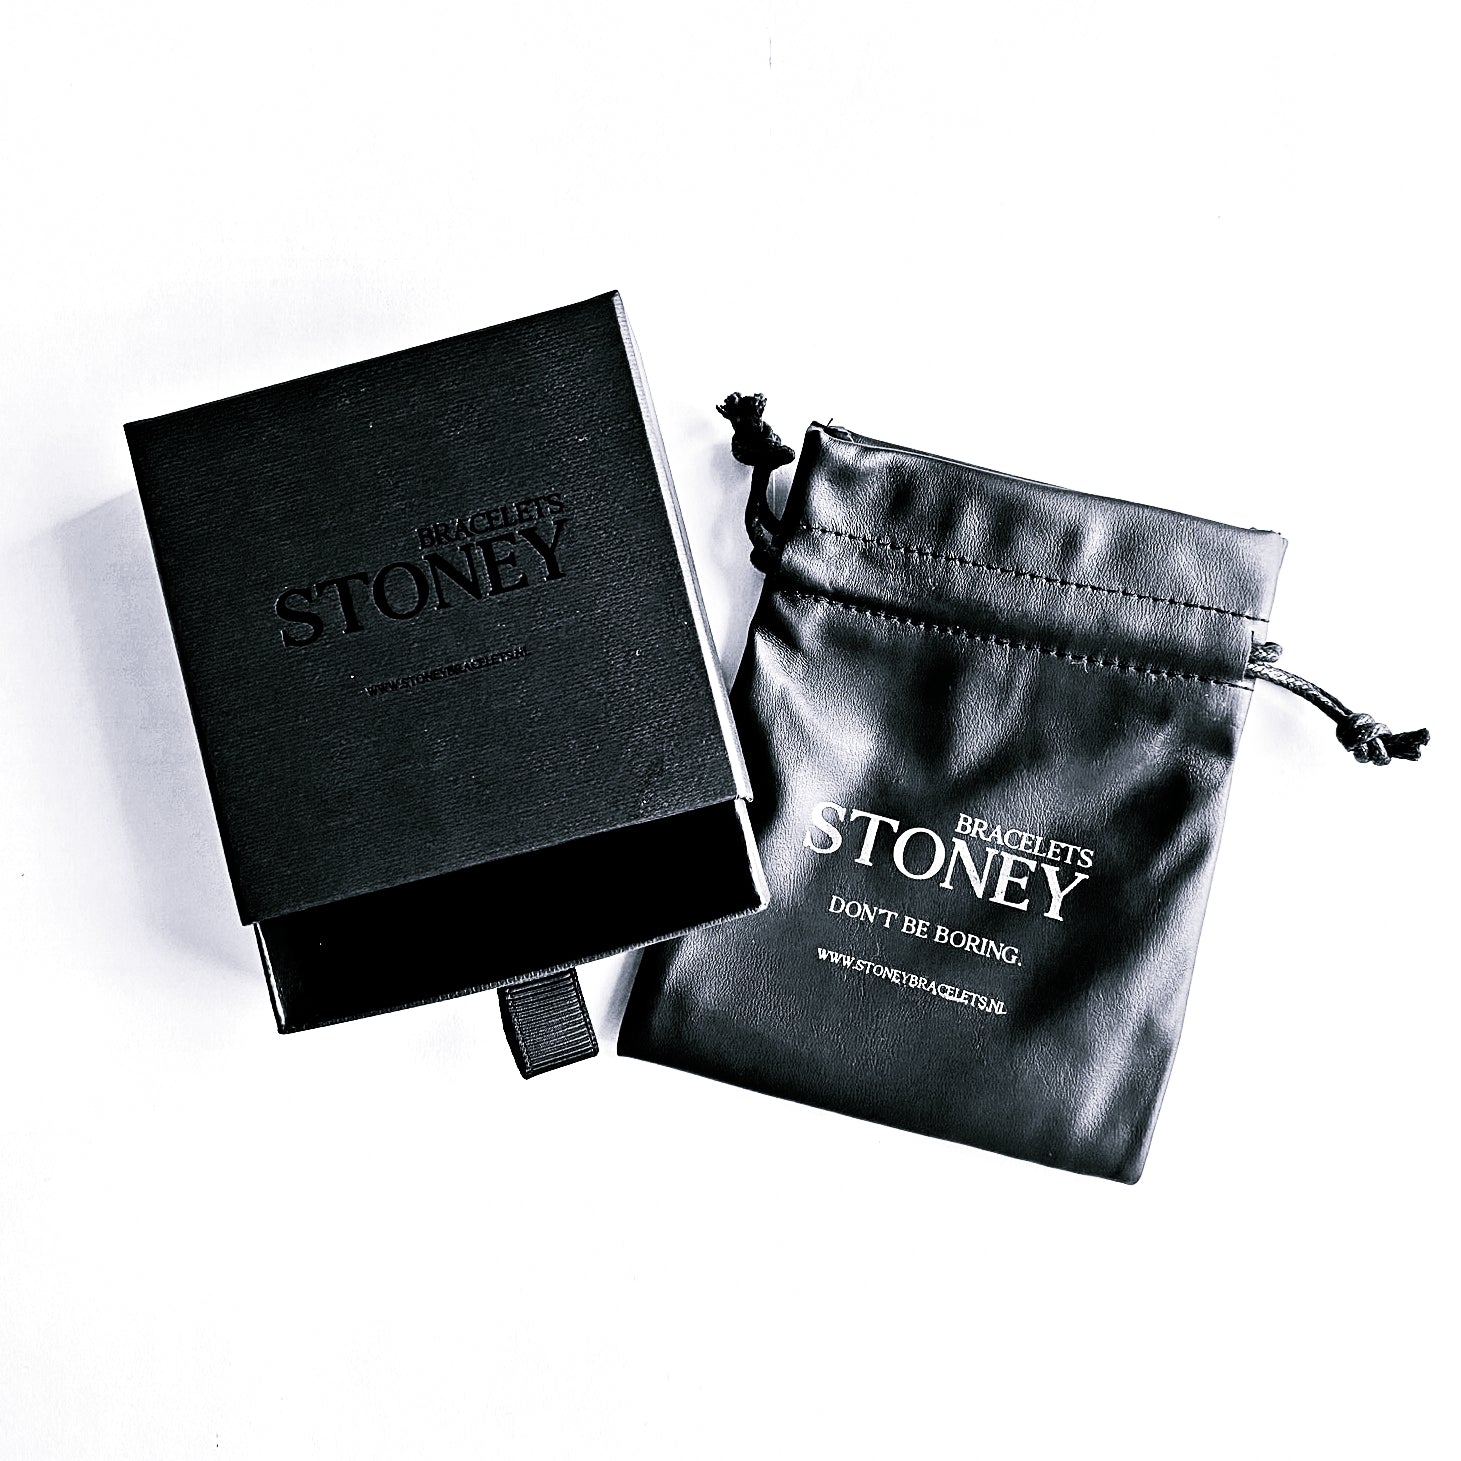 Een zwart etui met het woord Stoney Bracelets erop, gemaakt van natuursteen.